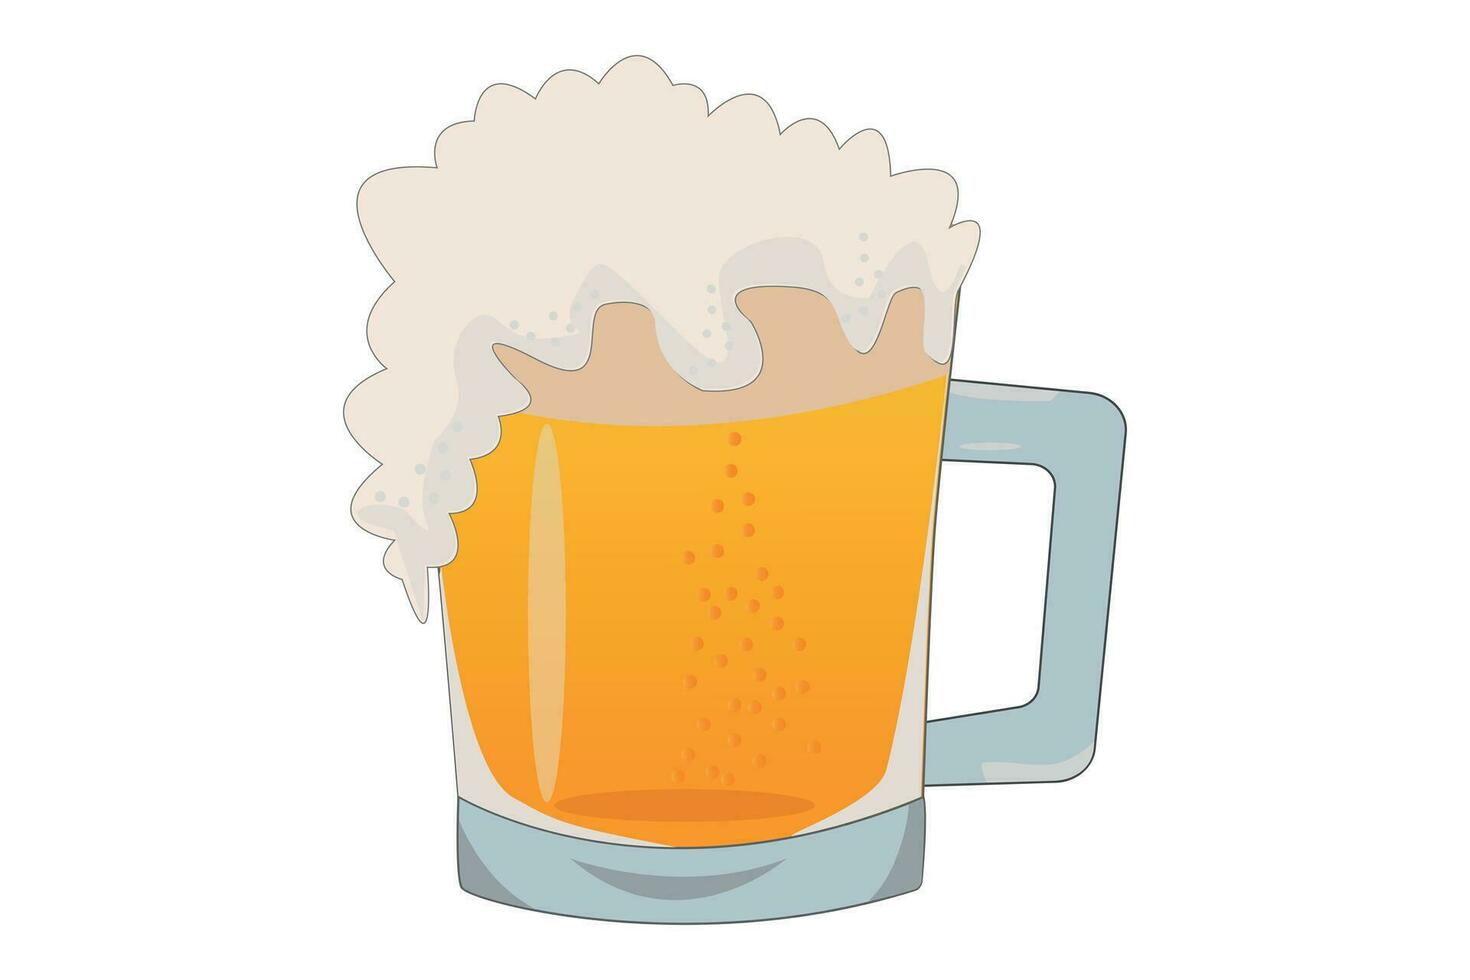 mok met bier. bier mok met schuim.kleurrijk versie, bril van bier. bar, kroeg symbool, bier festival, logo illustratie. vector grafiek.